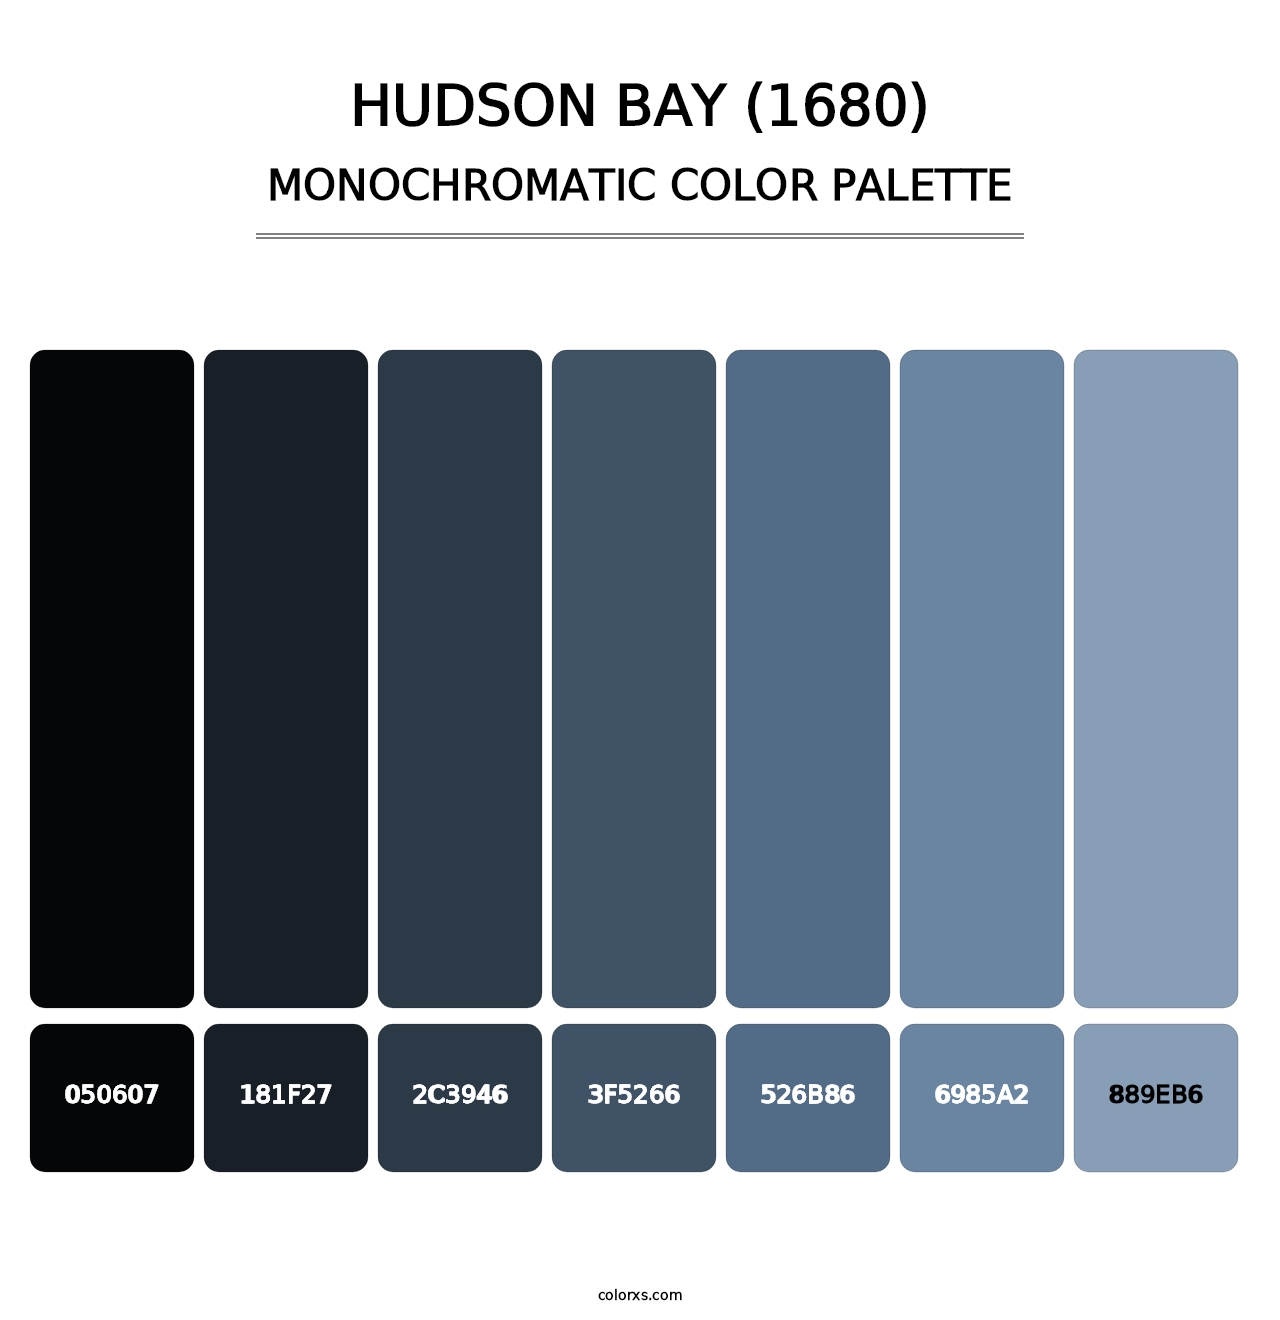 Hudson Bay (1680) - Monochromatic Color Palette